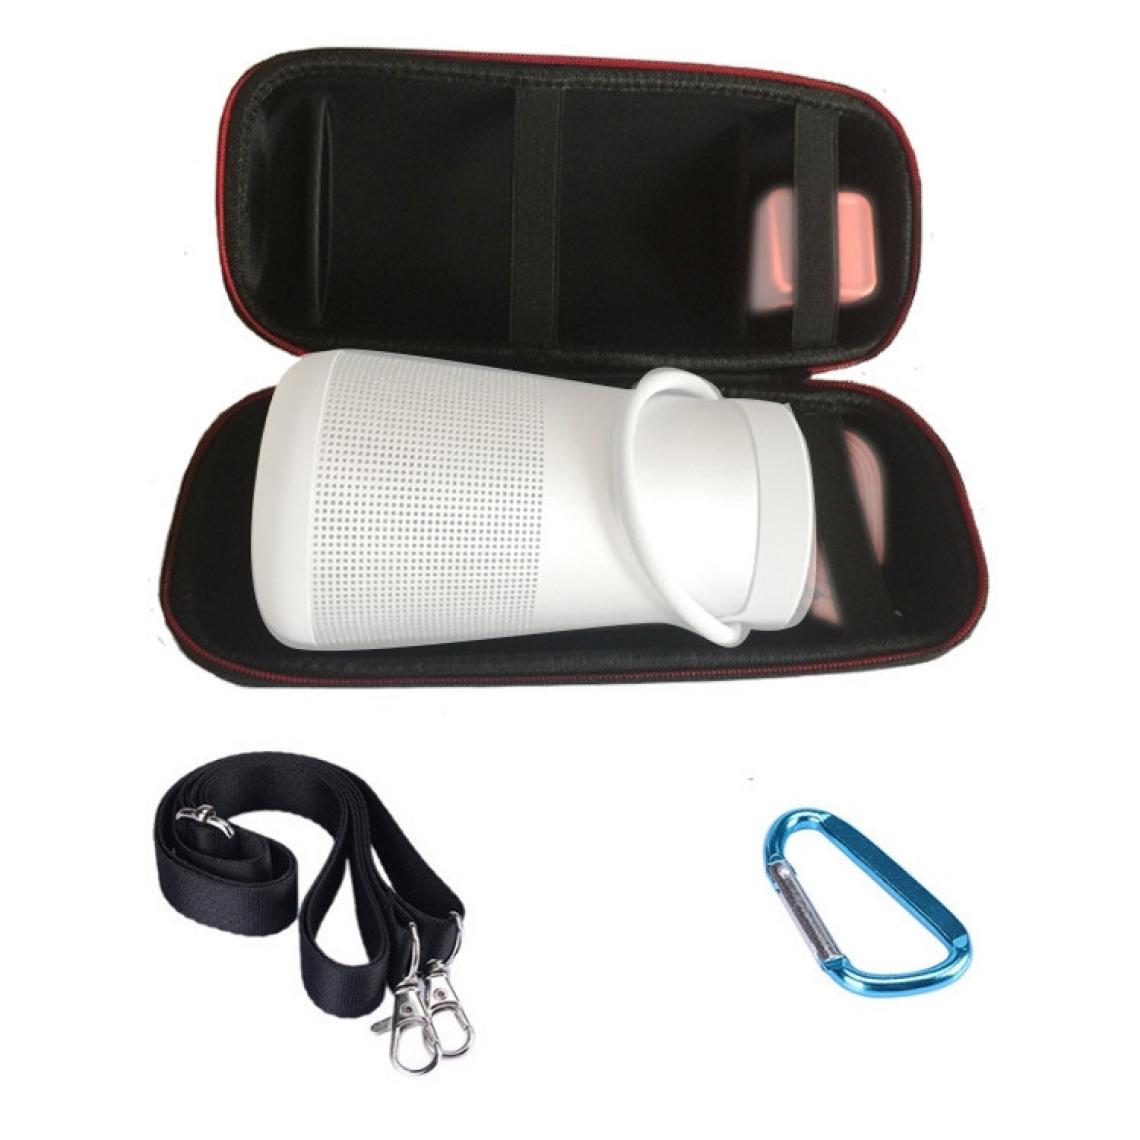 Wewoo - Haut-parleur portable Bluetooth antichoc simple épaule Sac de rangement pour boîte de protection BOSE Soundlink Revolve + Noir - Enceintes Hifi